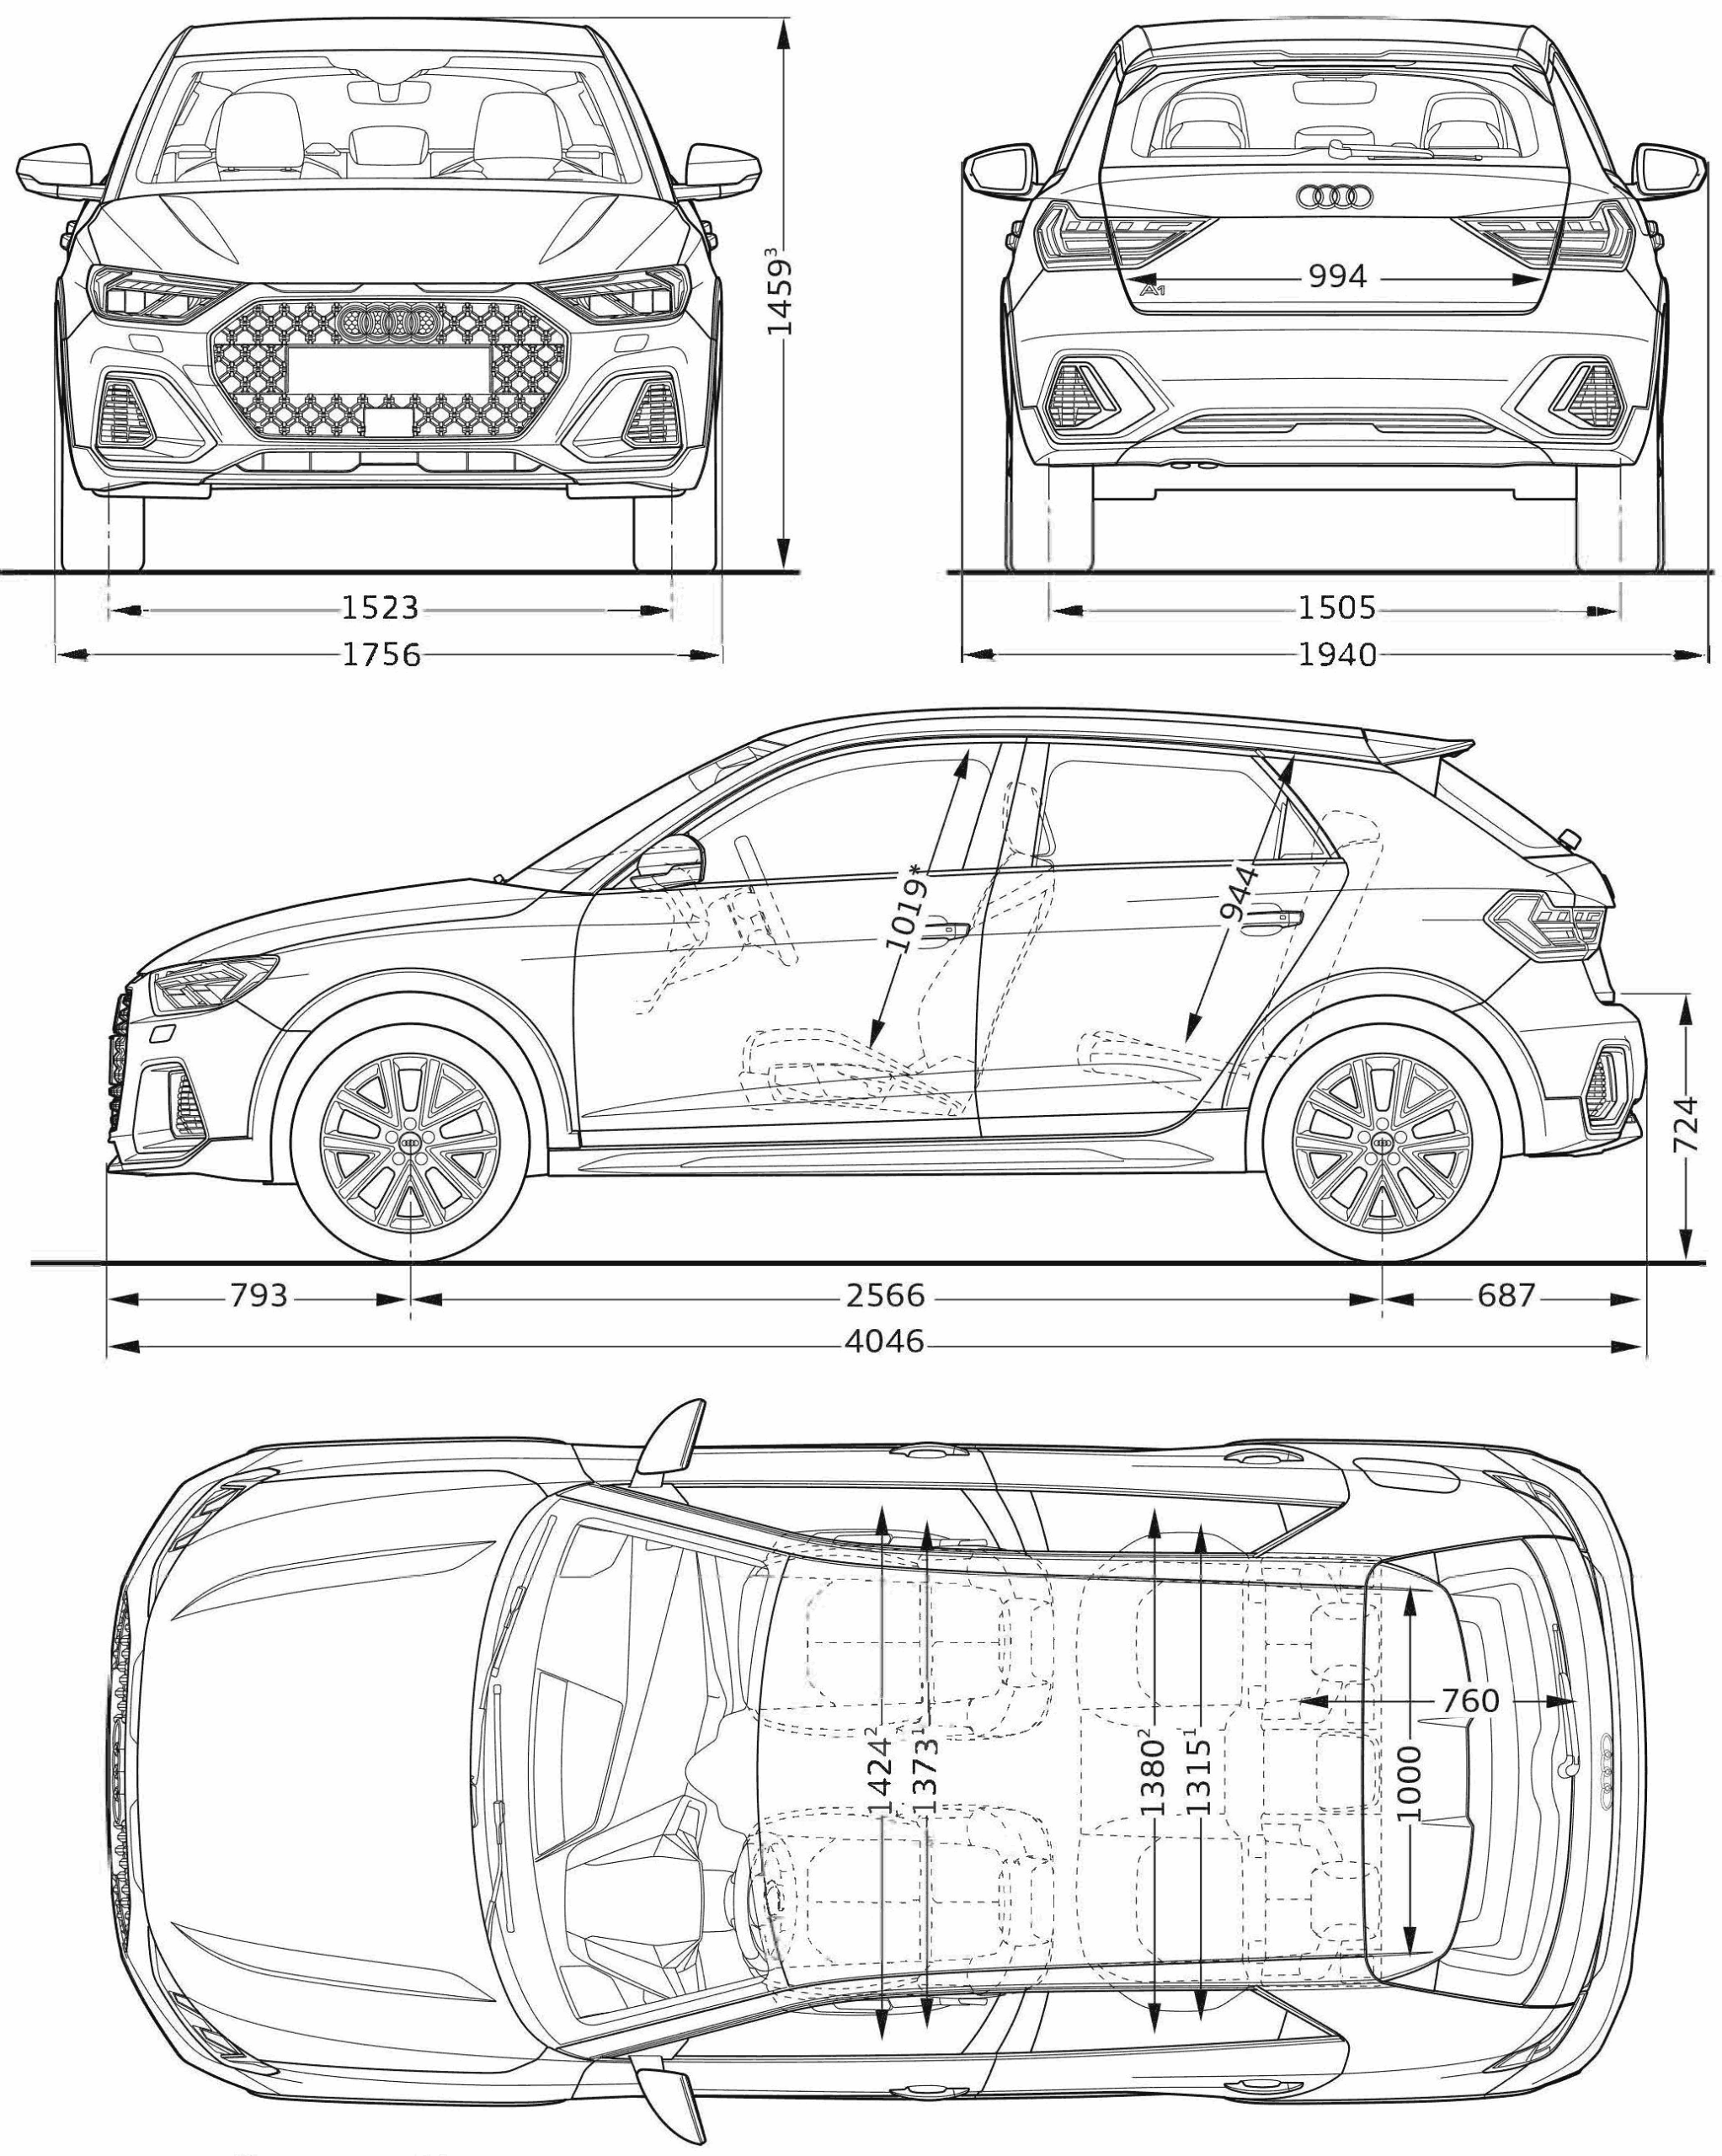 Audi A1 blueprint